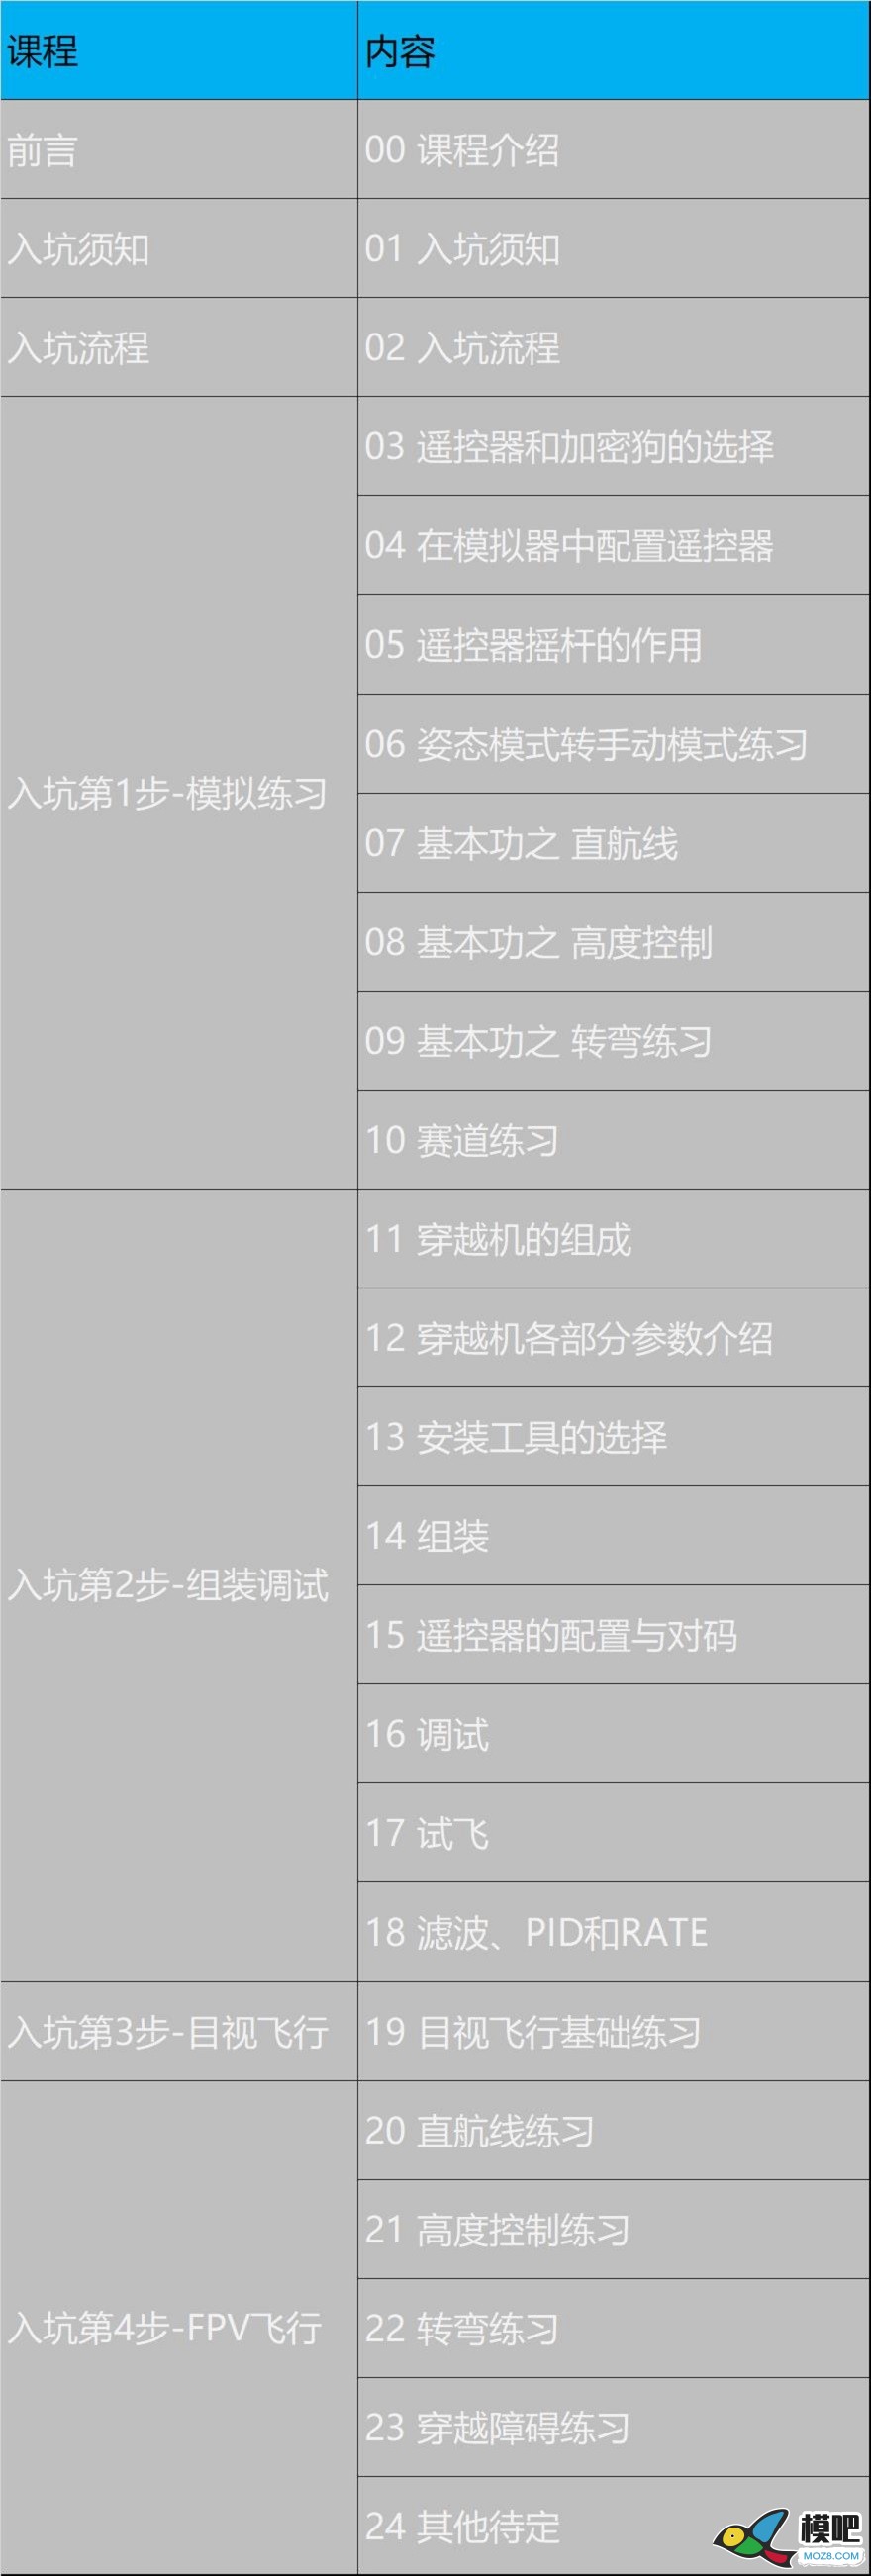 《穿越机入坑指南》已更新至3.11 穿越机的可选配件 穿越机,电池,天线,电调,电机 作者:yangjinduo 822 